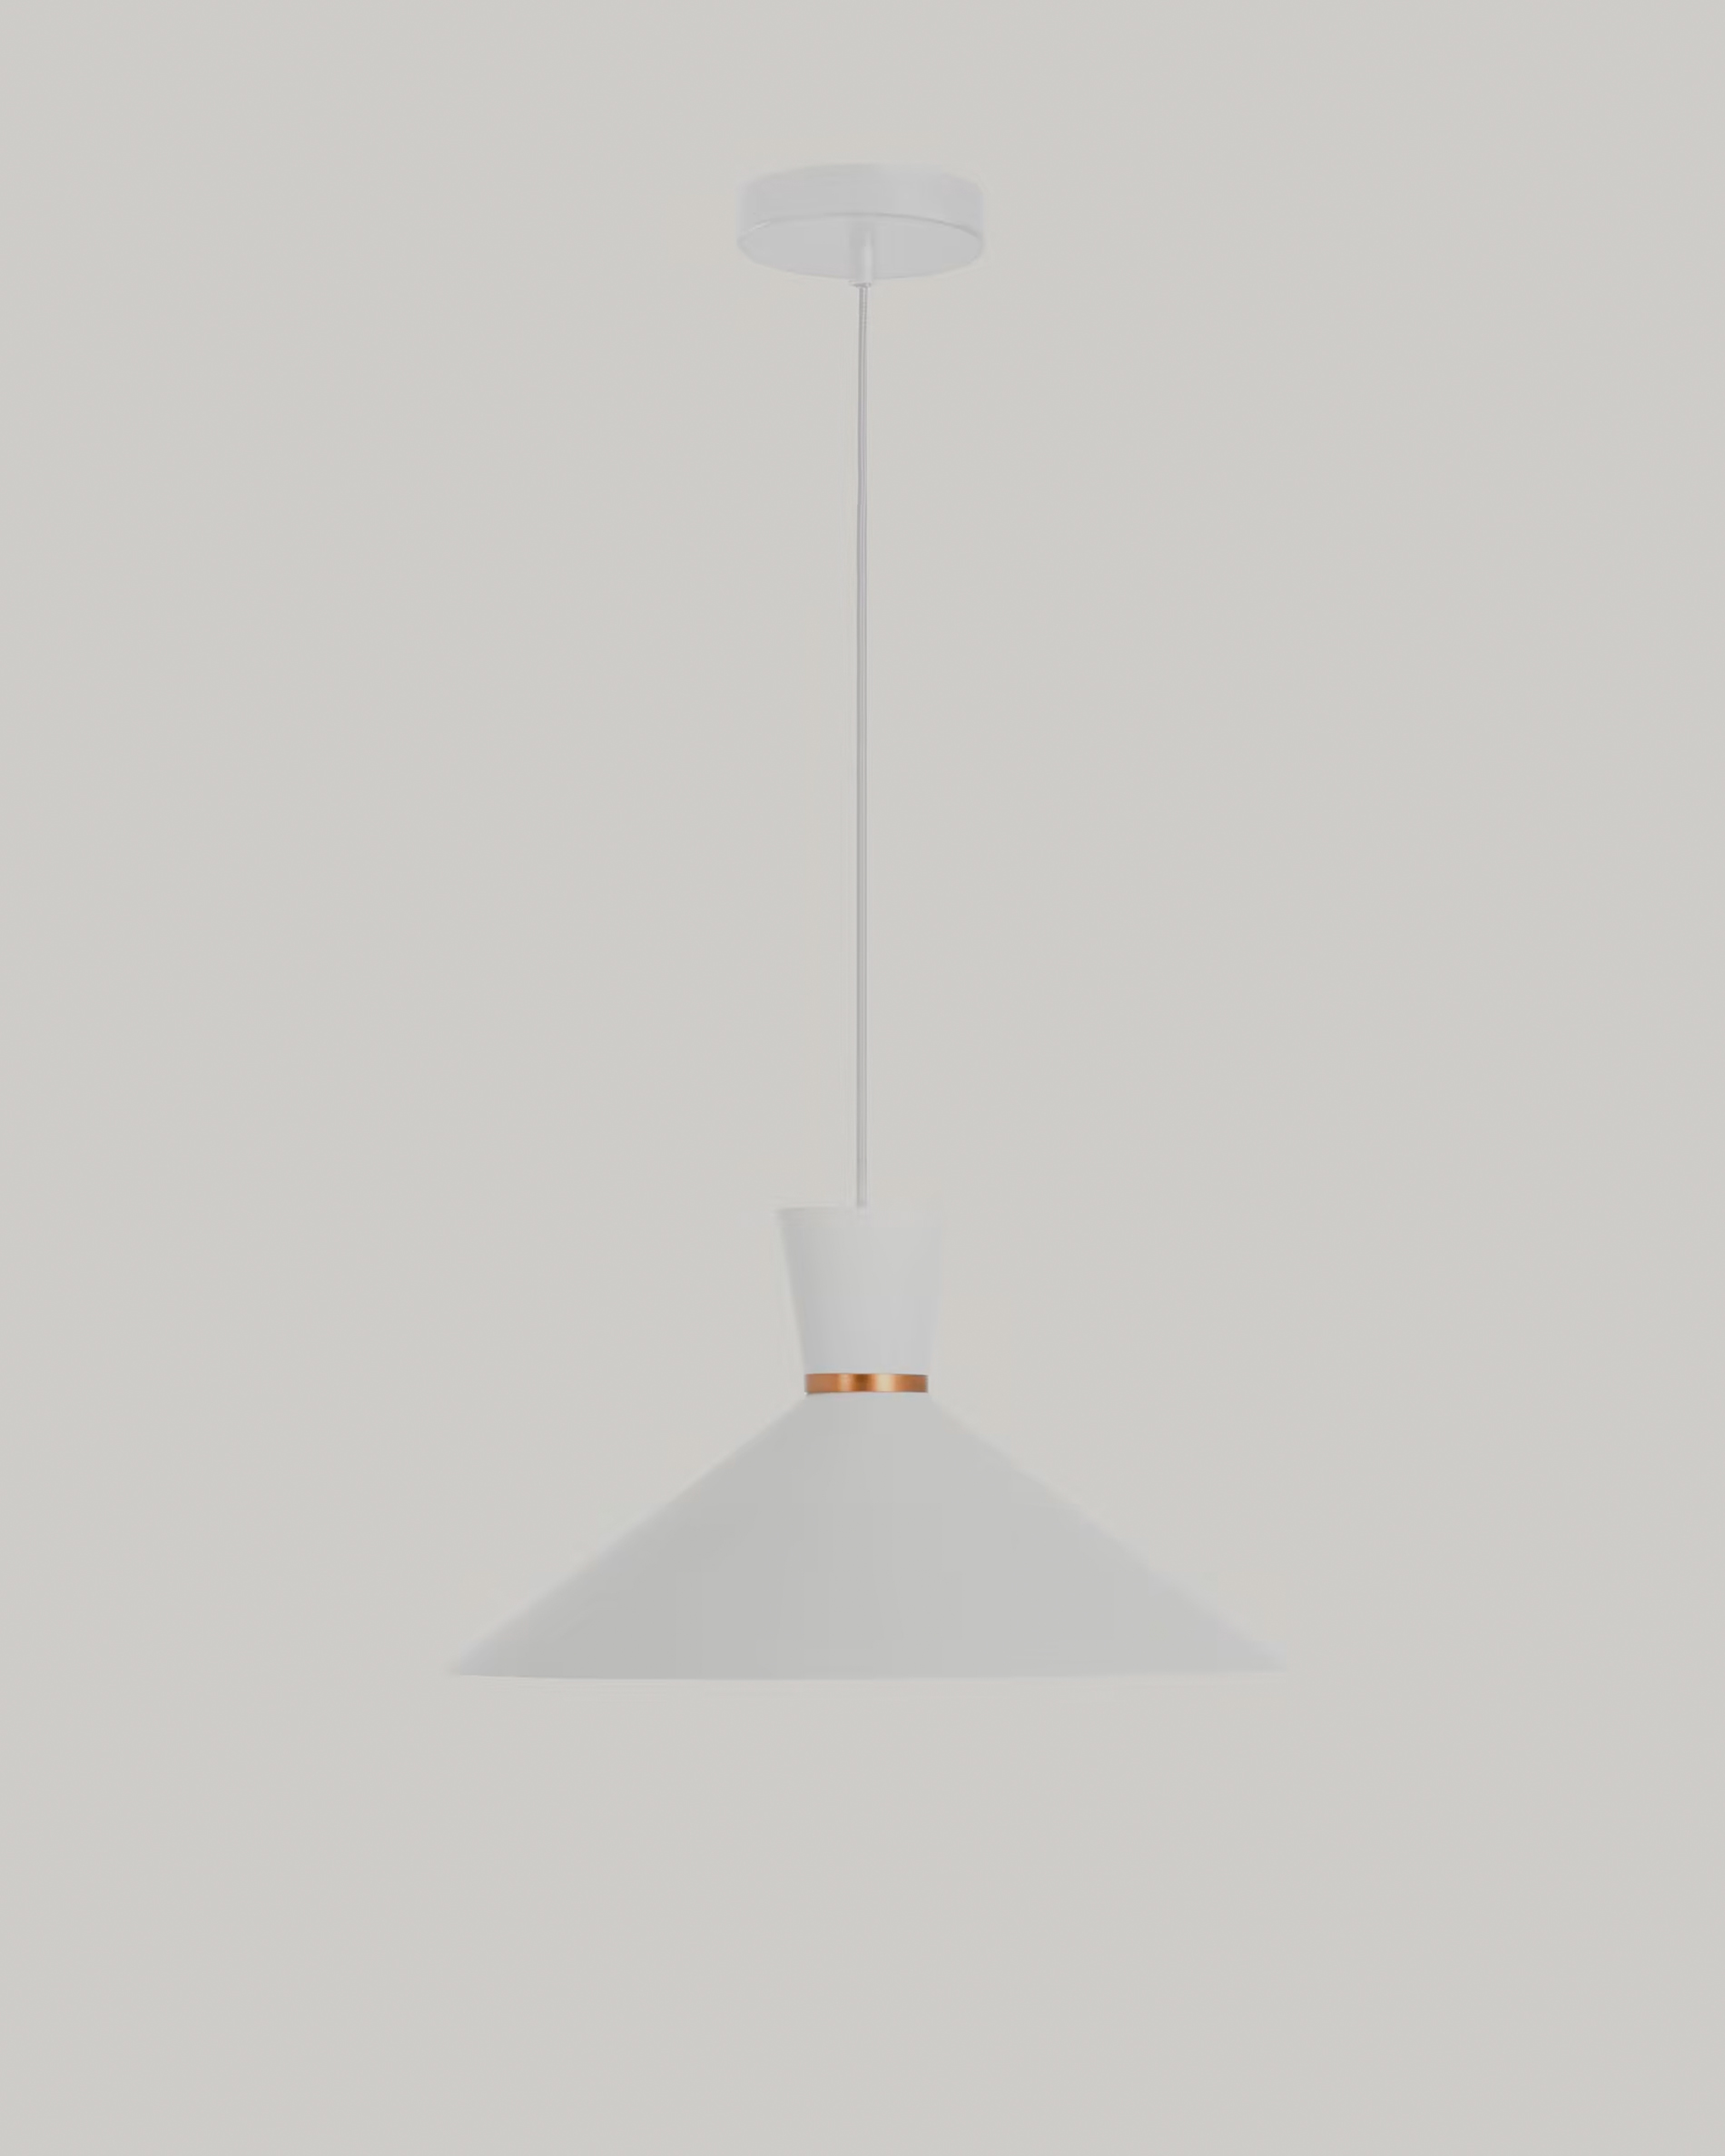 Deze plafondlamp is een en al geometrie. Prachtig in een Scandinavisch interieur. De koperen rand maakt de lamp helemaal af.